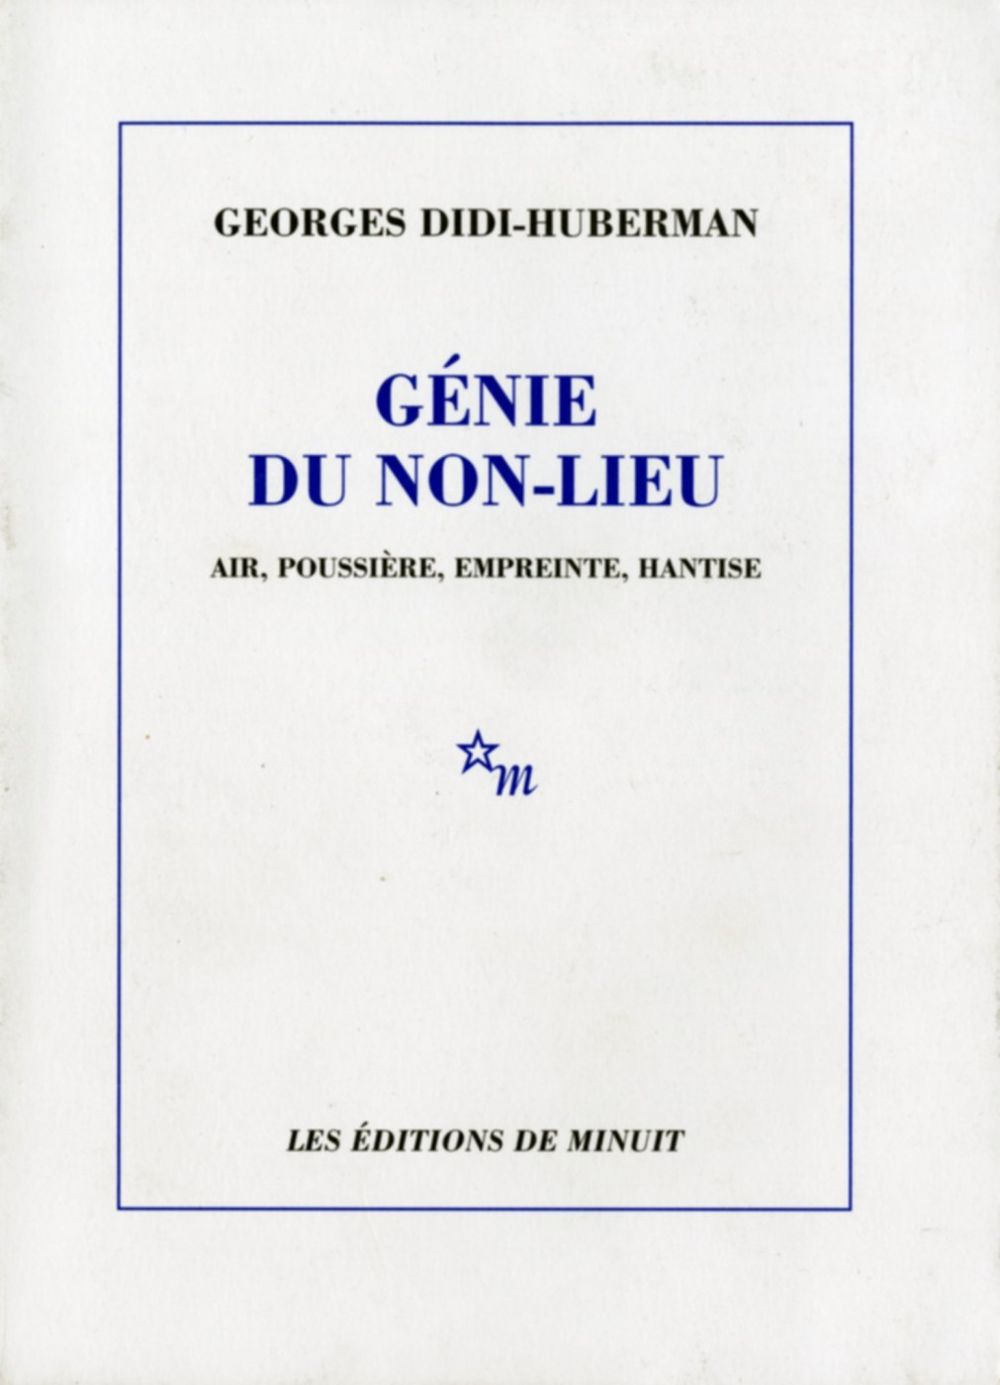 Book cover on plain gray background with title of Génie du Non-Lieu: Air, Poussière, Empreinte, Hantise